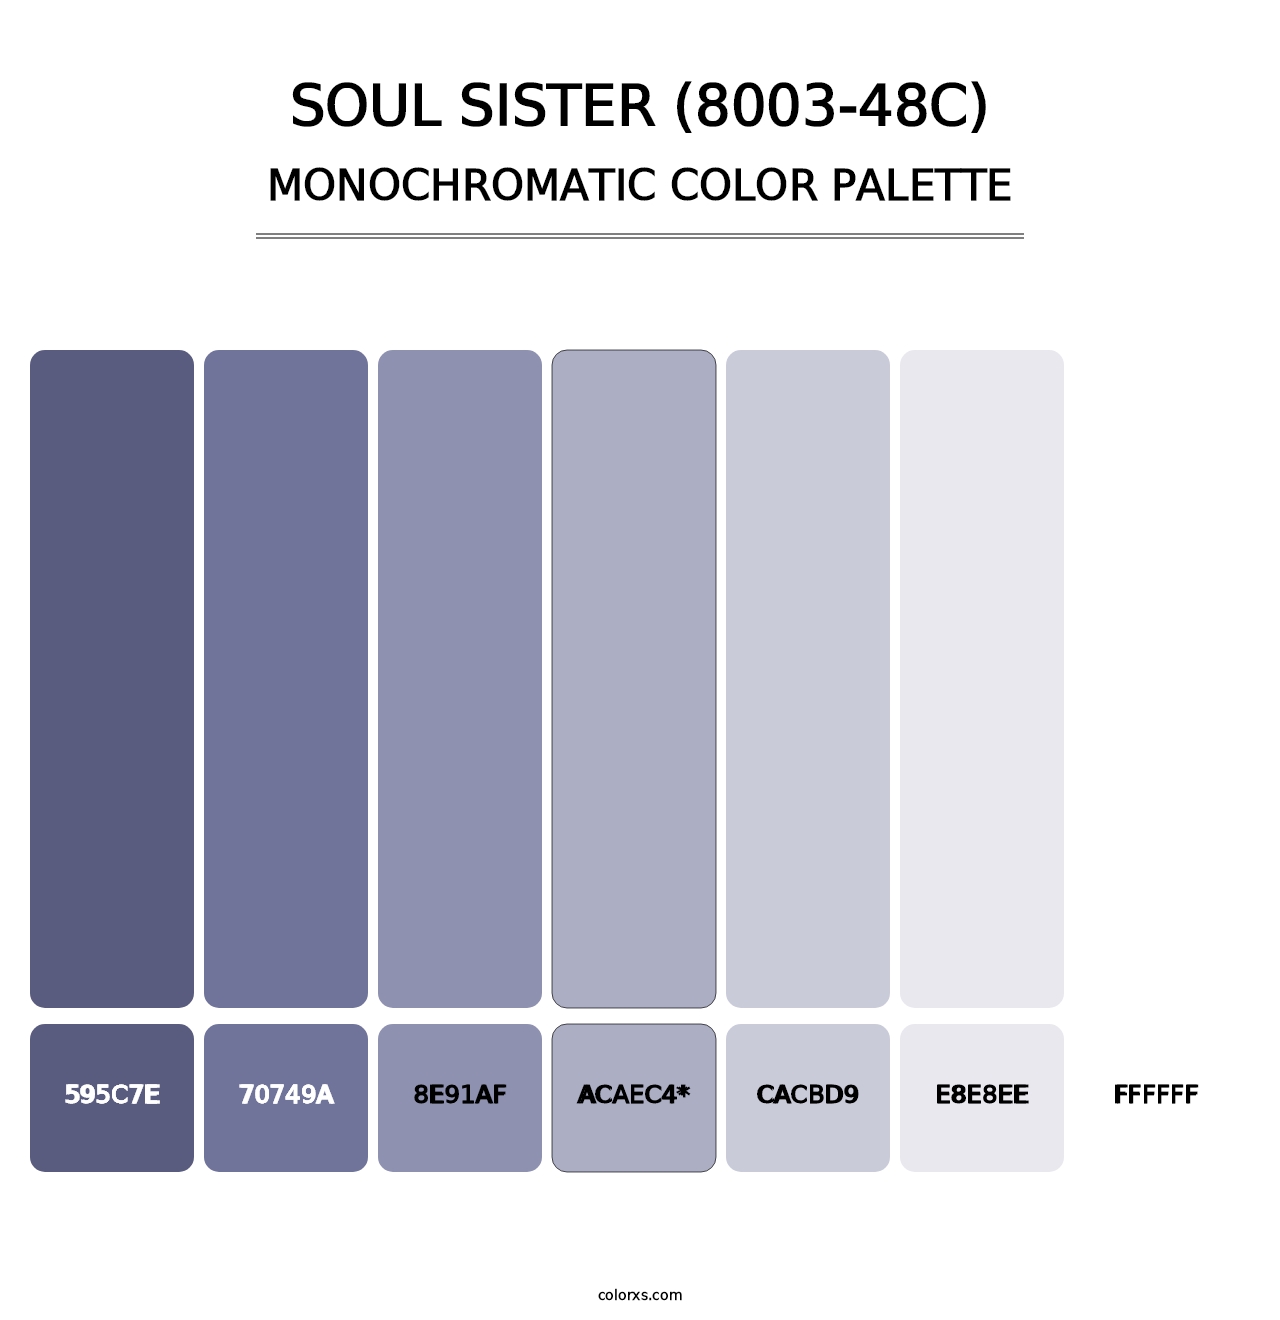 Soul Sister (8003-48C) - Monochromatic Color Palette